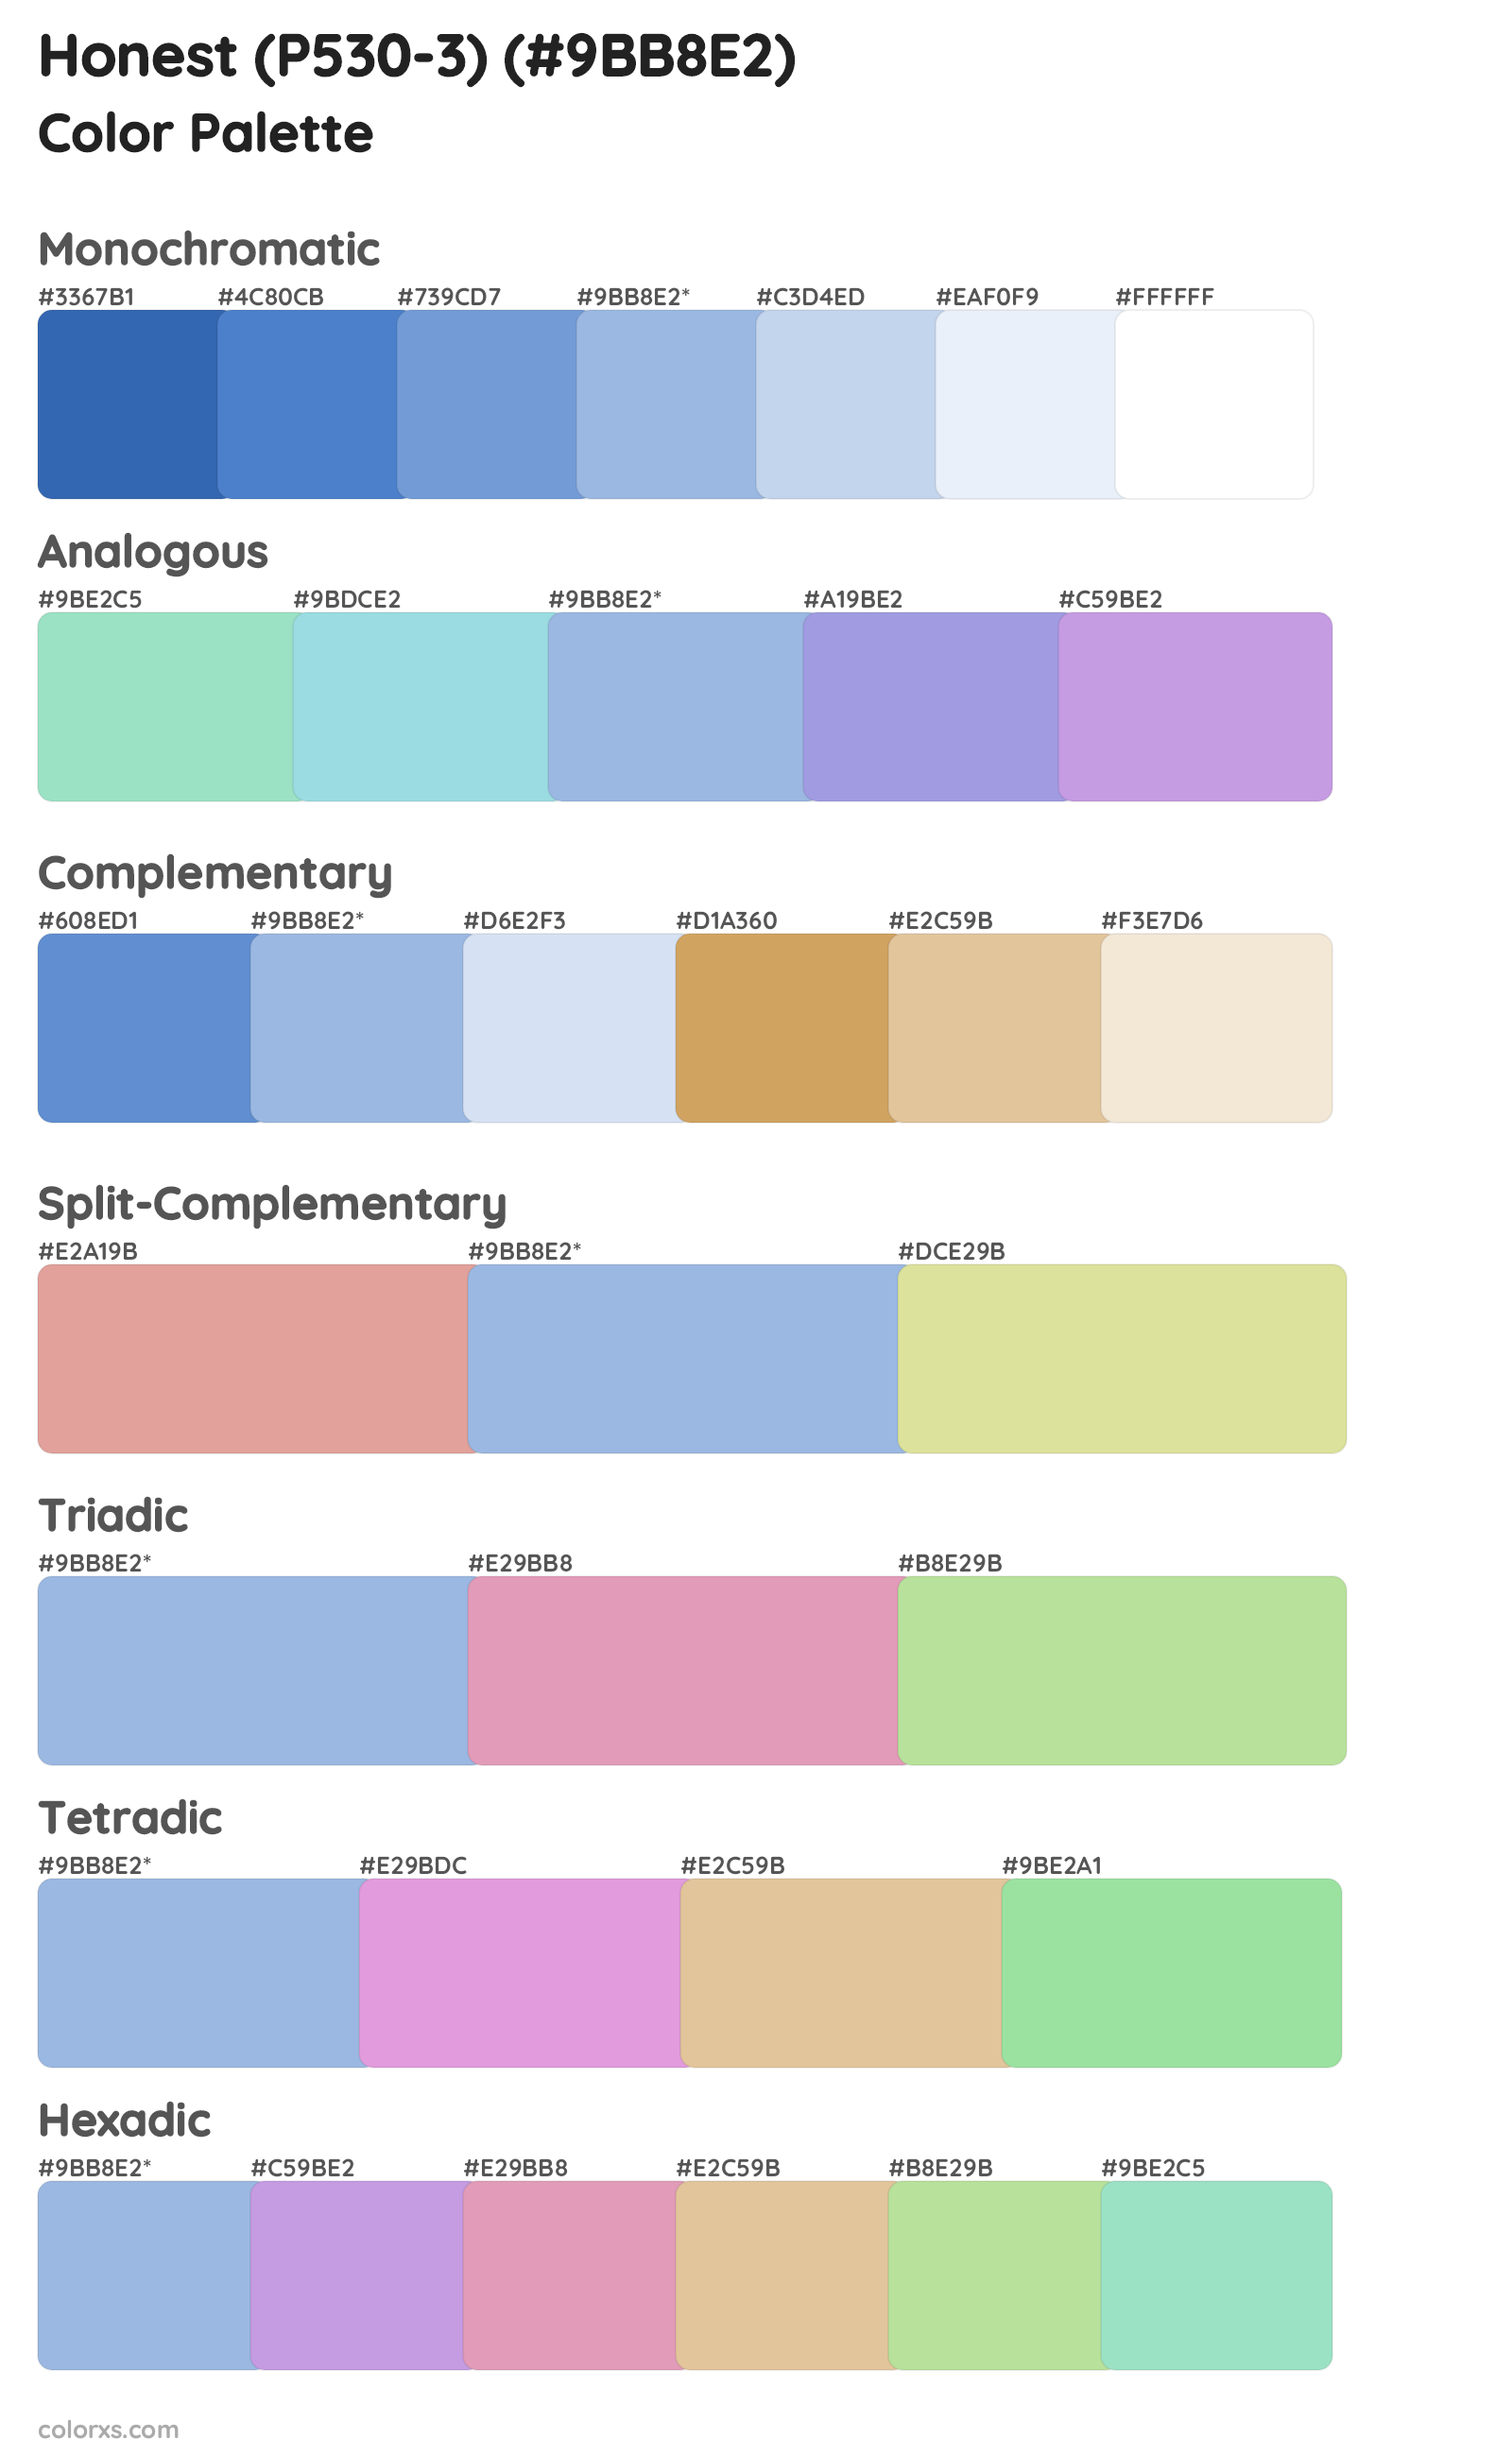 Honest (P530-3) Color Scheme Palettes